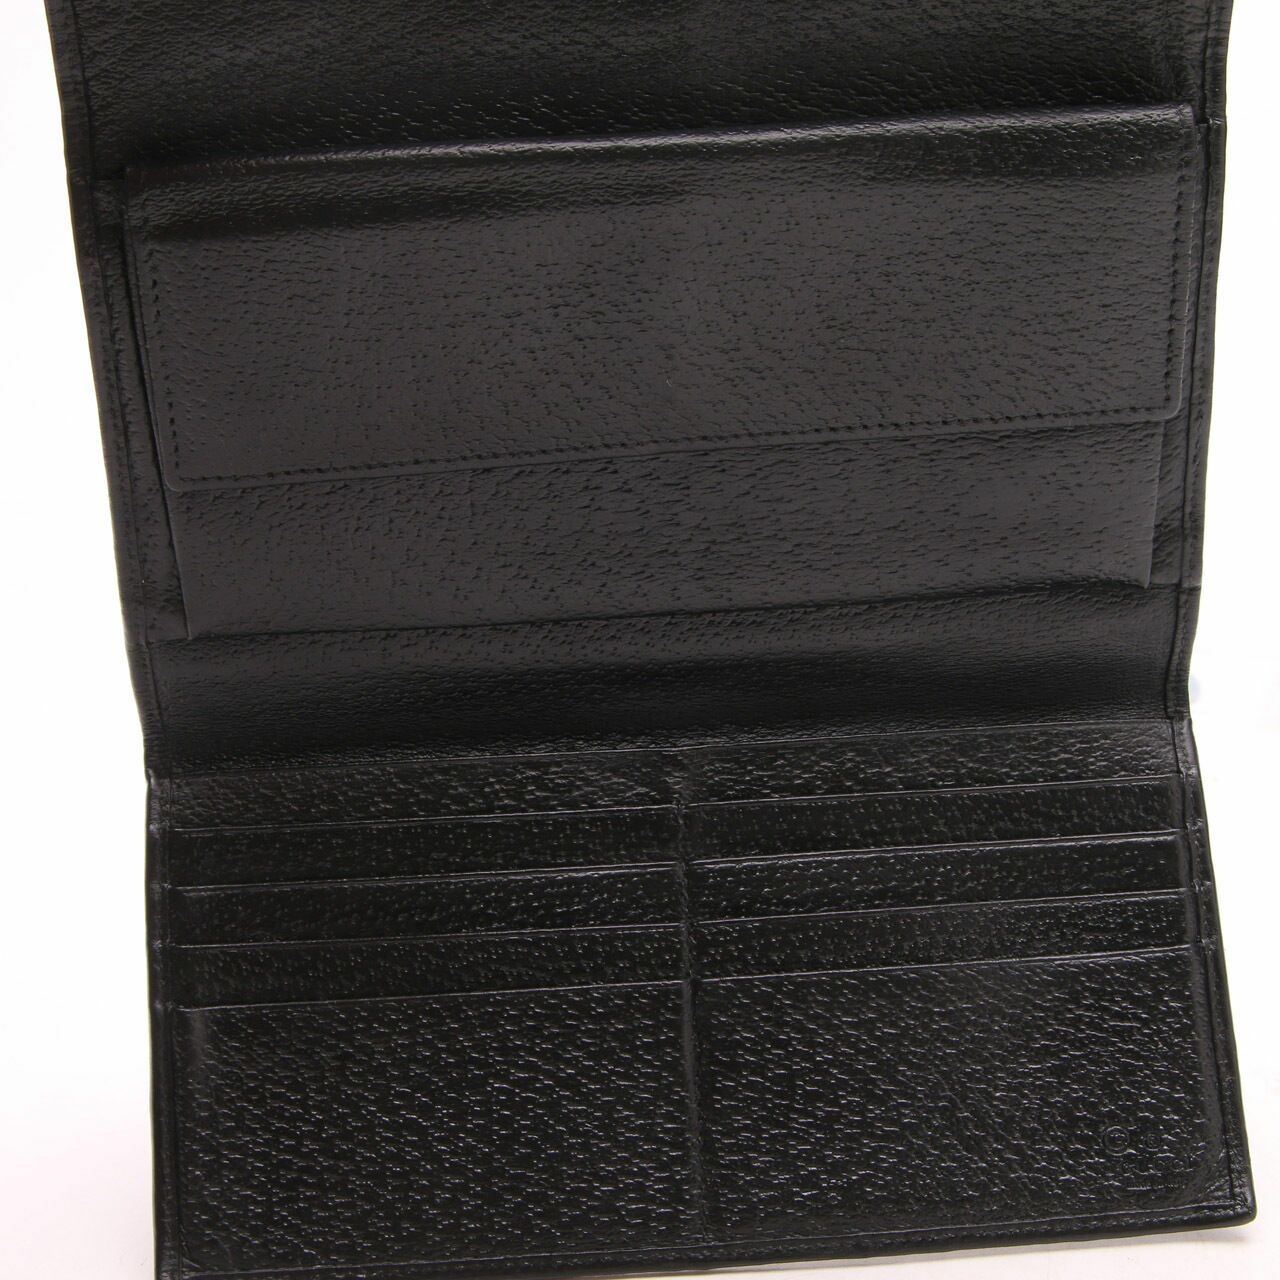 Gucci Black Flap Wallet